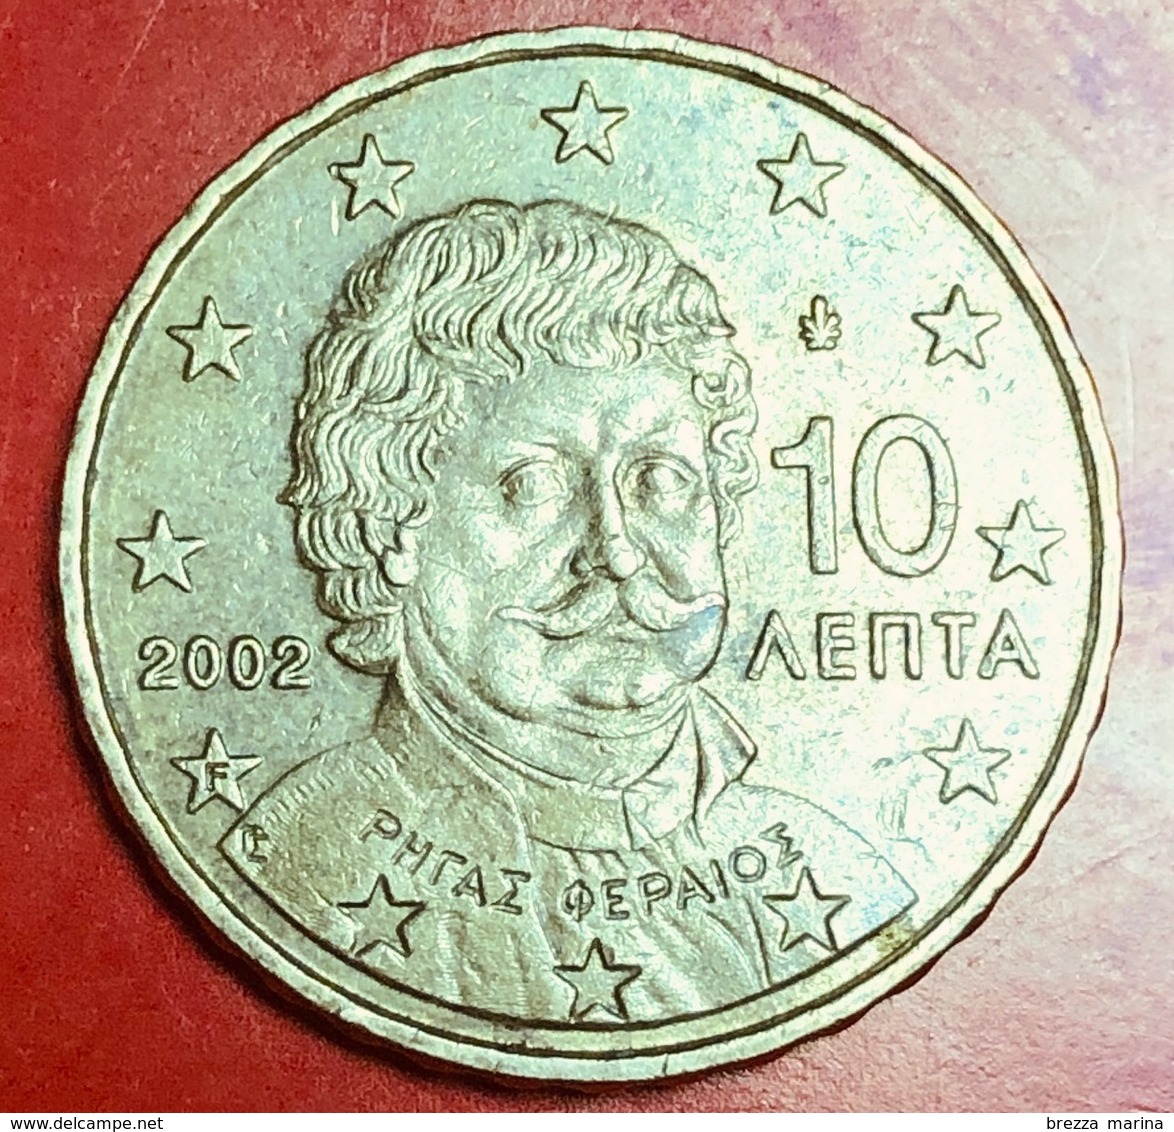 GRECIA - 2002 - Moneta - Ritratto Di Rigas Fereos-Velestinlis (1757-1798) - Euro - 0.10 - Grecia